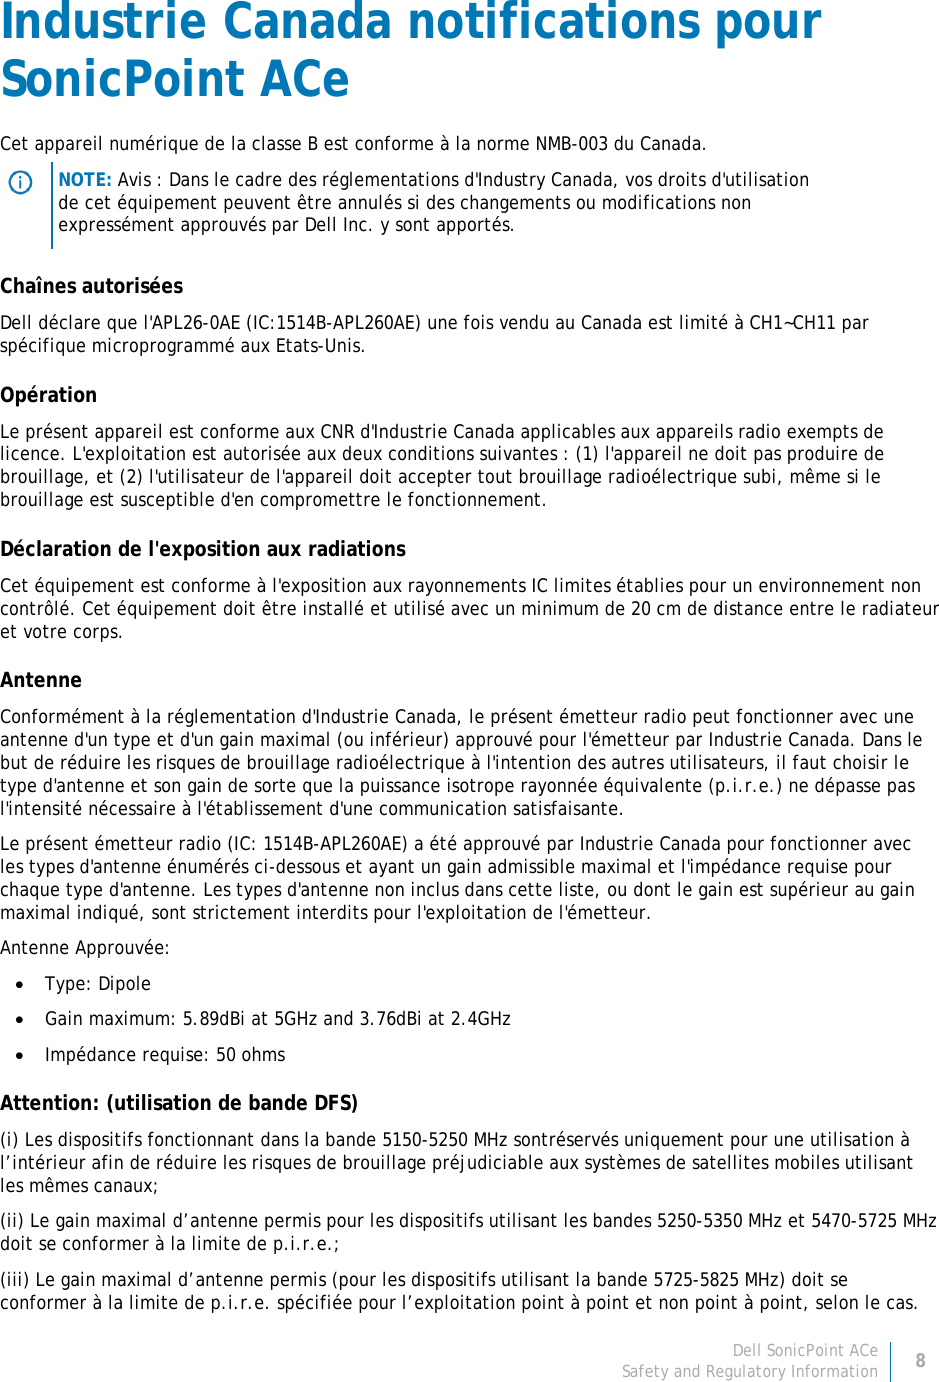 Dell SonicPoint ACe 8 Safety and Regulatory Information     Industrie Canada notifications pour SonicPoint ACe Cet appareil numérique de la classe B est conforme à la norme NMB-003 du Canada.  NOTE: Avis : Dans le cadre des réglementations d&apos;Industry Canada, vos droits d&apos;utilisation de cet équipement peuvent être annulés si des changements ou modifications non expressément approuvés par Dell Inc. y sont apportés. Chaînes autorisées Dell déclare que l&apos;APL26-0AE (IC:1514B-APL260AE) une fois vendu au Canada est limité à CH1~CH11 par spécifique microprogrammé aux Etats-Unis. Opération Le présent appareil est conforme aux CNR d&apos;Industrie Canada applicables aux appareils radio exempts de licence. L&apos;exploitation est autorisée aux deux conditions suivantes : (1) l&apos;appareil ne doit pas produire de brouillage, et (2) l&apos;utilisateur de l&apos;appareil doit accepter tout brouillage radioélectrique subi, même si le brouillage est susceptible d&apos;en compromettre le fonctionnement. Déclaration de l&apos;exposition aux radiations Cet équipement est conforme à l&apos;exposition aux rayonnements IC limites établies pour un environnement non contrôlé. Cet équipement doit être installé et utilisé avec un minimum de 20 cm de distance entre le radiateur et votre corps. Antenne Conformément à la réglementation d&apos;Industrie Canada, le présent émetteur radio peut fonctionner avec une antenne d&apos;un type et d&apos;un gain maximal (ou inférieur) approuvé pour l&apos;émetteur par Industrie Canada. Dans le but de réduire les risques de brouillage radioélectrique à l&apos;intention des autres utilisateurs, il faut choisir le type d&apos;antenne et son gain de sorte que la puissance isotrope rayonnée équivalente (p.i.r.e.) ne dépasse pas l&apos;intensité nécessaire à l&apos;établissement d&apos;une communication satisfaisante. Le présent émetteur radio (IC: 1514B-APL260AE) a été approuvé par Industrie Canada pour fonctionner avec les types d&apos;antenne énumérés ci-dessous et ayant un gain admissible maximal et l&apos;impédance requise pour chaque type d&apos;antenne. Les types d&apos;antenne non inclus dans cette liste, ou dont le gain est supérieur au gain maximal indiqué, sont strictement interdits pour l&apos;exploitation de l&apos;émetteur. Antenne Approuvée: • Type: Dipole • Gain maximum: 5.89dBi at 5GHz and 3.76dBi at 2.4GHz • Impédance requise: 50 ohms Attention: (utilisation de bande DFS) (i) Les dispositifs fonctionnant dans la bande 5150-5250 MHz sontréservés uniquement pour une utilisation à l’intérieur afin de réduire les risques de brouillage préjudiciable aux systèmes de satellites mobiles utilisant les mêmes canaux; (ii) Le gain maximal d’antenne permis pour les dispositifs utilisant les bandes 5250-5350 MHz et 5470-5725 MHz doit se conformer à la limite de p.i.r.e.; (iii) Le gain maximal d’antenne permis (pour les dispositifs utilisant la bande 5725-5825 MHz) doit se conformer à la limite de p.i.r.e. spécifiée pour l’exploitation point à point et non point à point, selon le cas. 